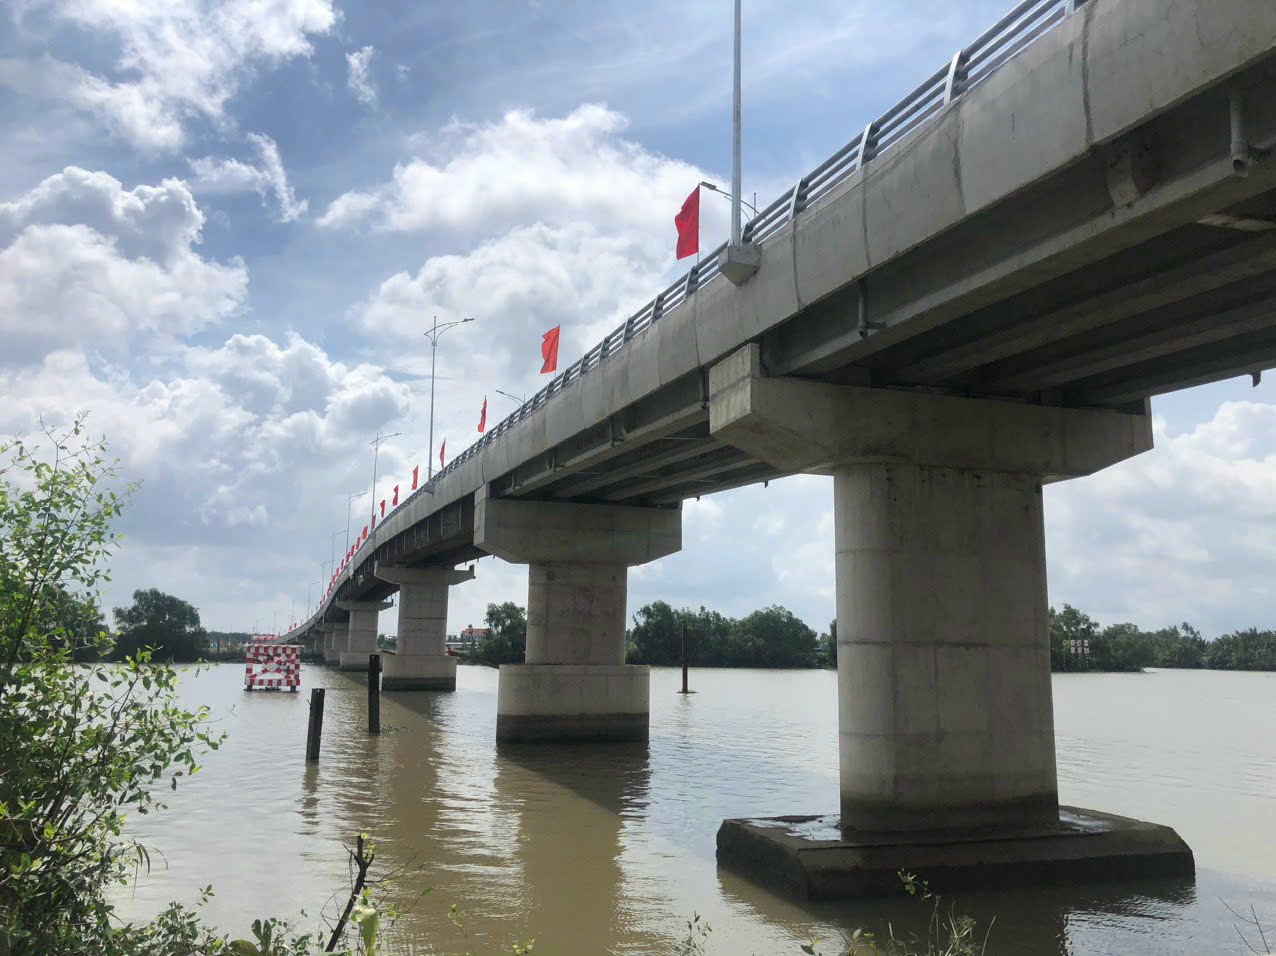 Cầu Cần Giuộc 150 tỉ đồng kết nối tỉnh Long An với TPHCM. Ảnh: An Long